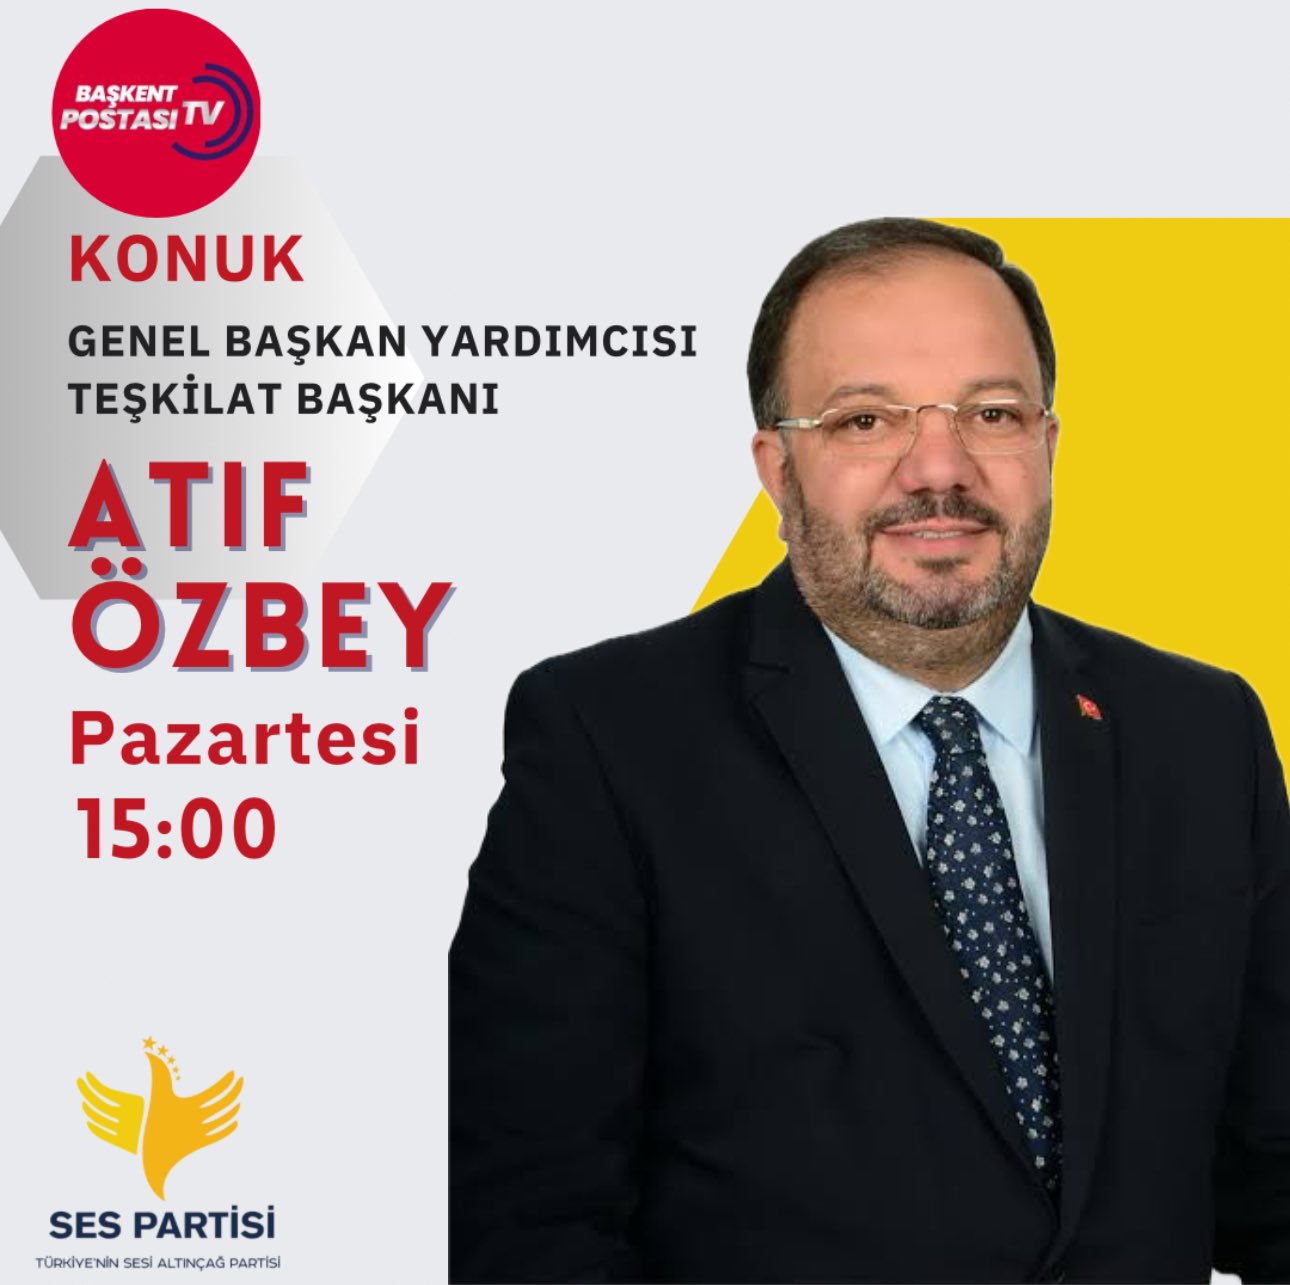 Atıf Özbey, Başkent Postası TV’ye konuk olacak!